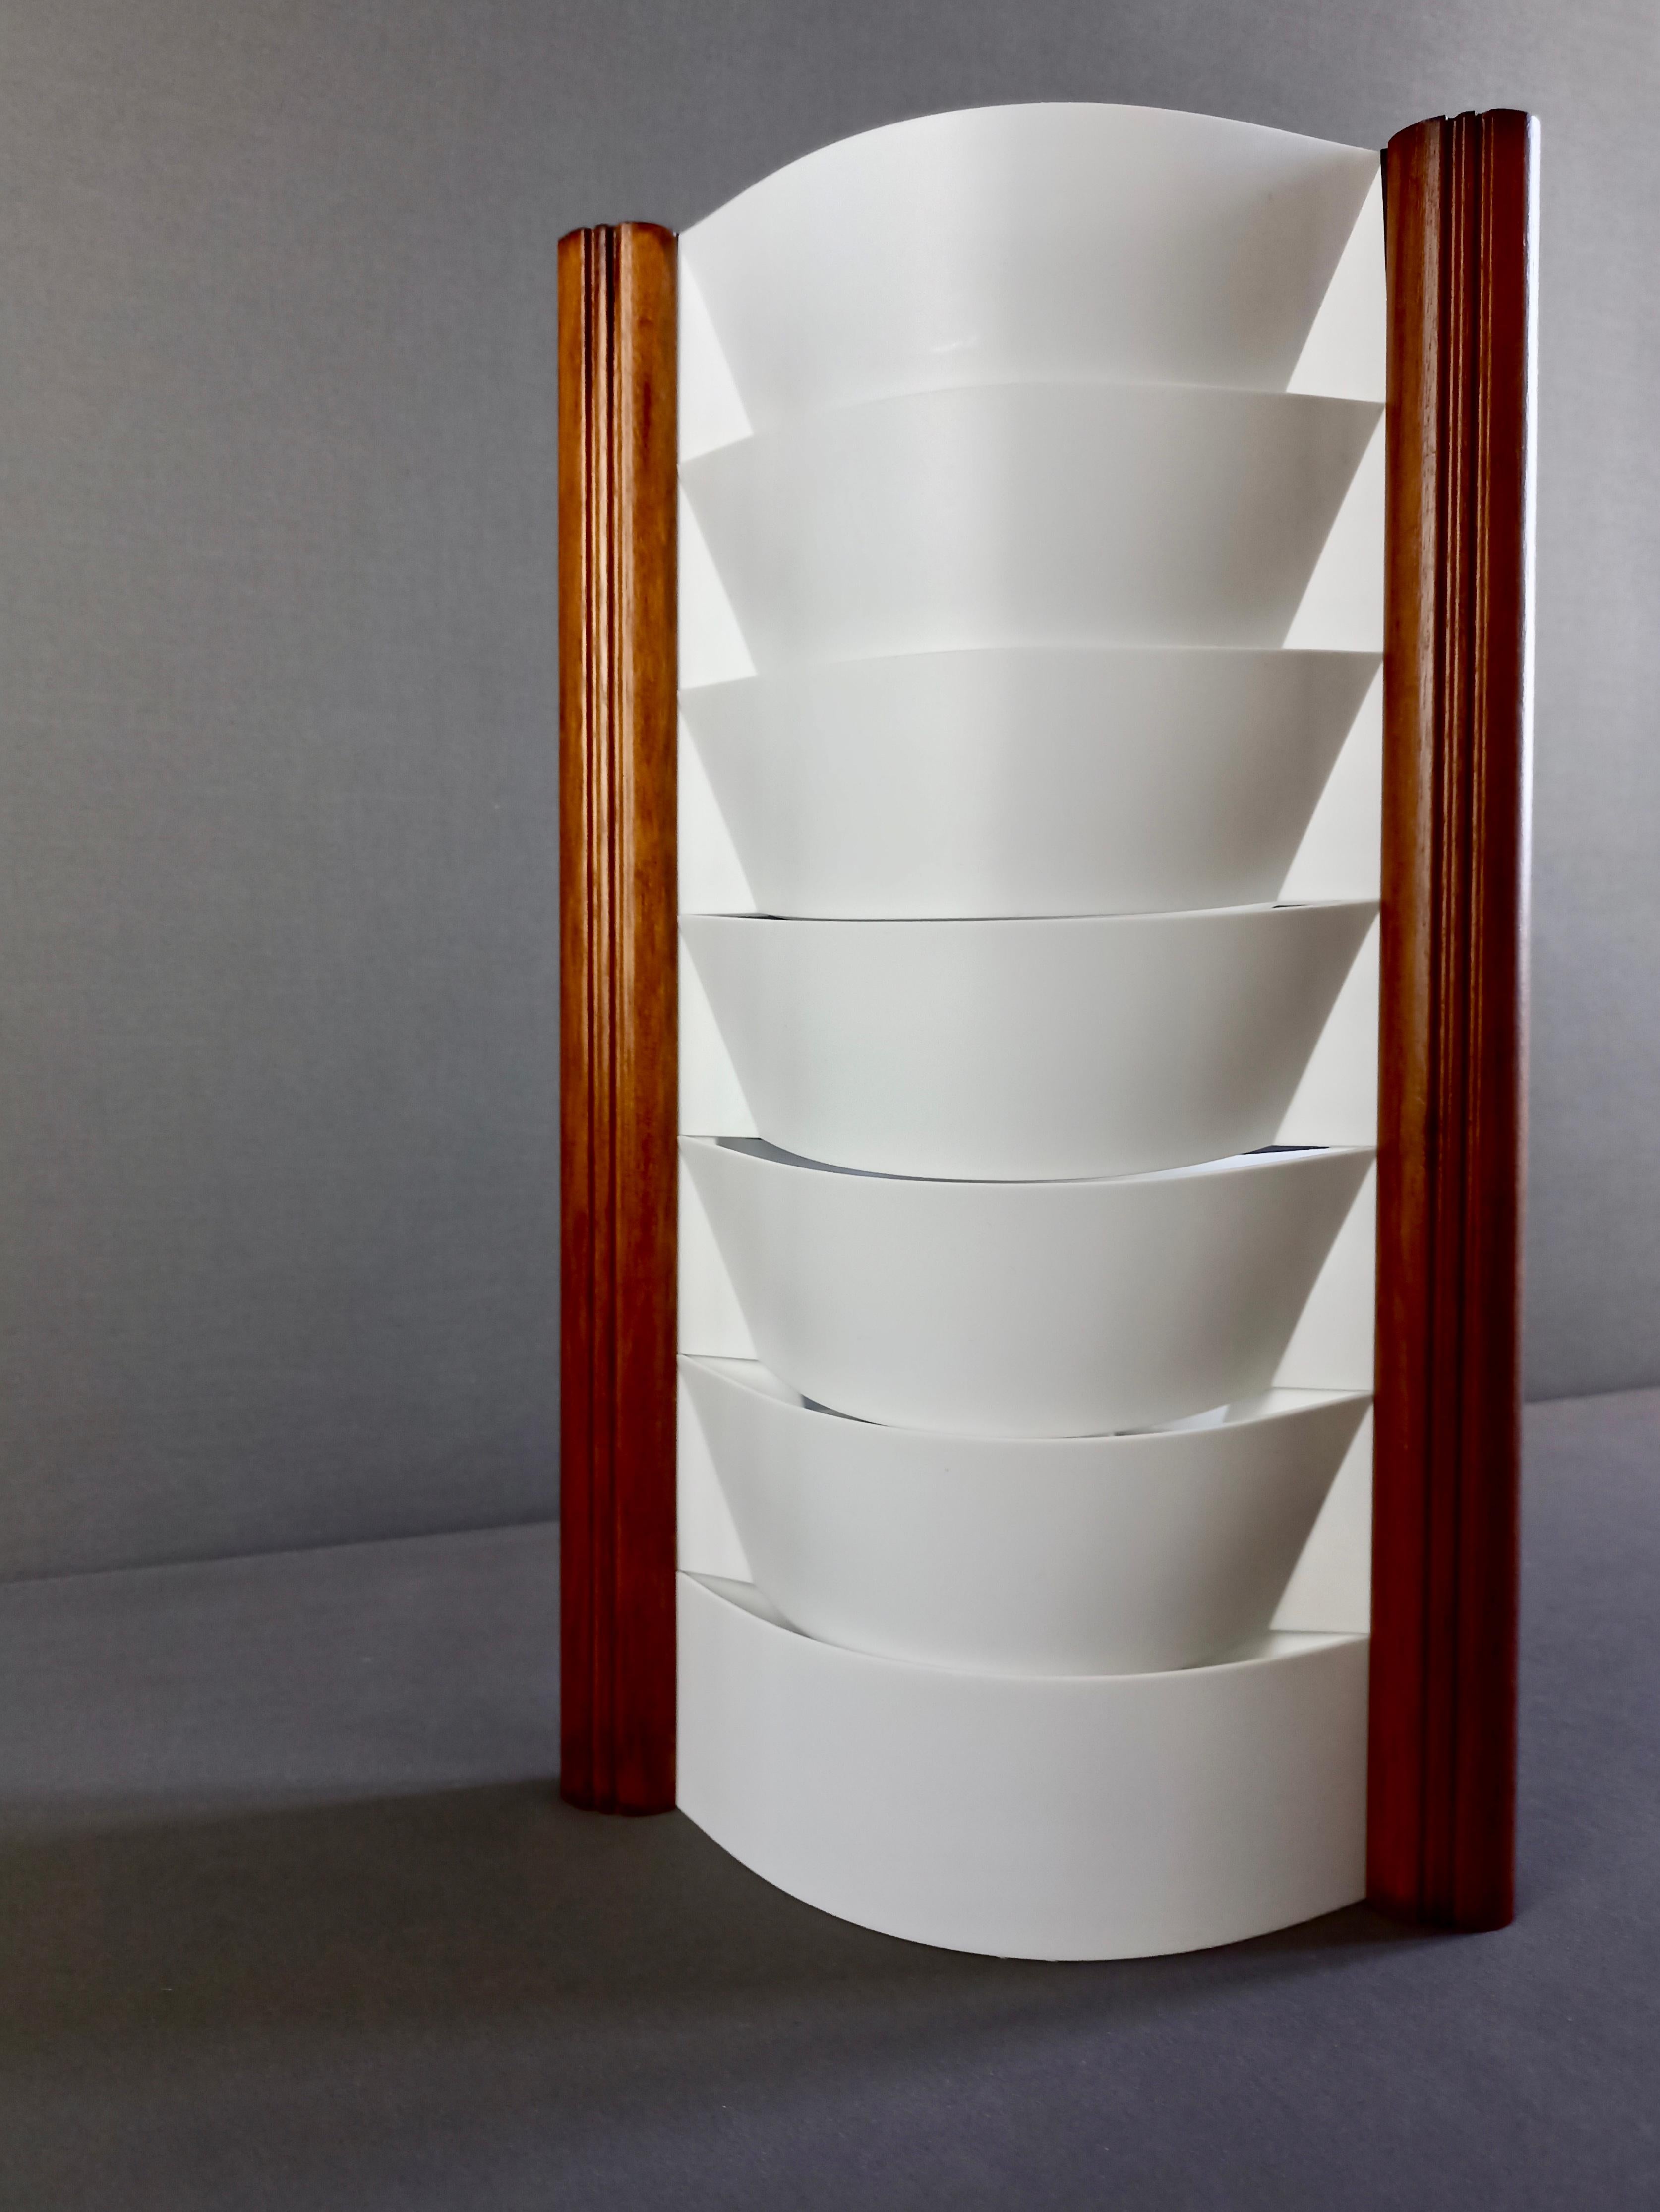 Schöne minimalistische Slamp S-Tube Samuel Parker Tischleuchte aus den frühen 2000er Jahren, aus weißem Opalflex-Kunststoff und walnussfarbenem Holzrahmen.
Perfekt, um ein sanftes Umgebungslicht zu schaffen, ist sie aufgrund ihres Designs auch ein